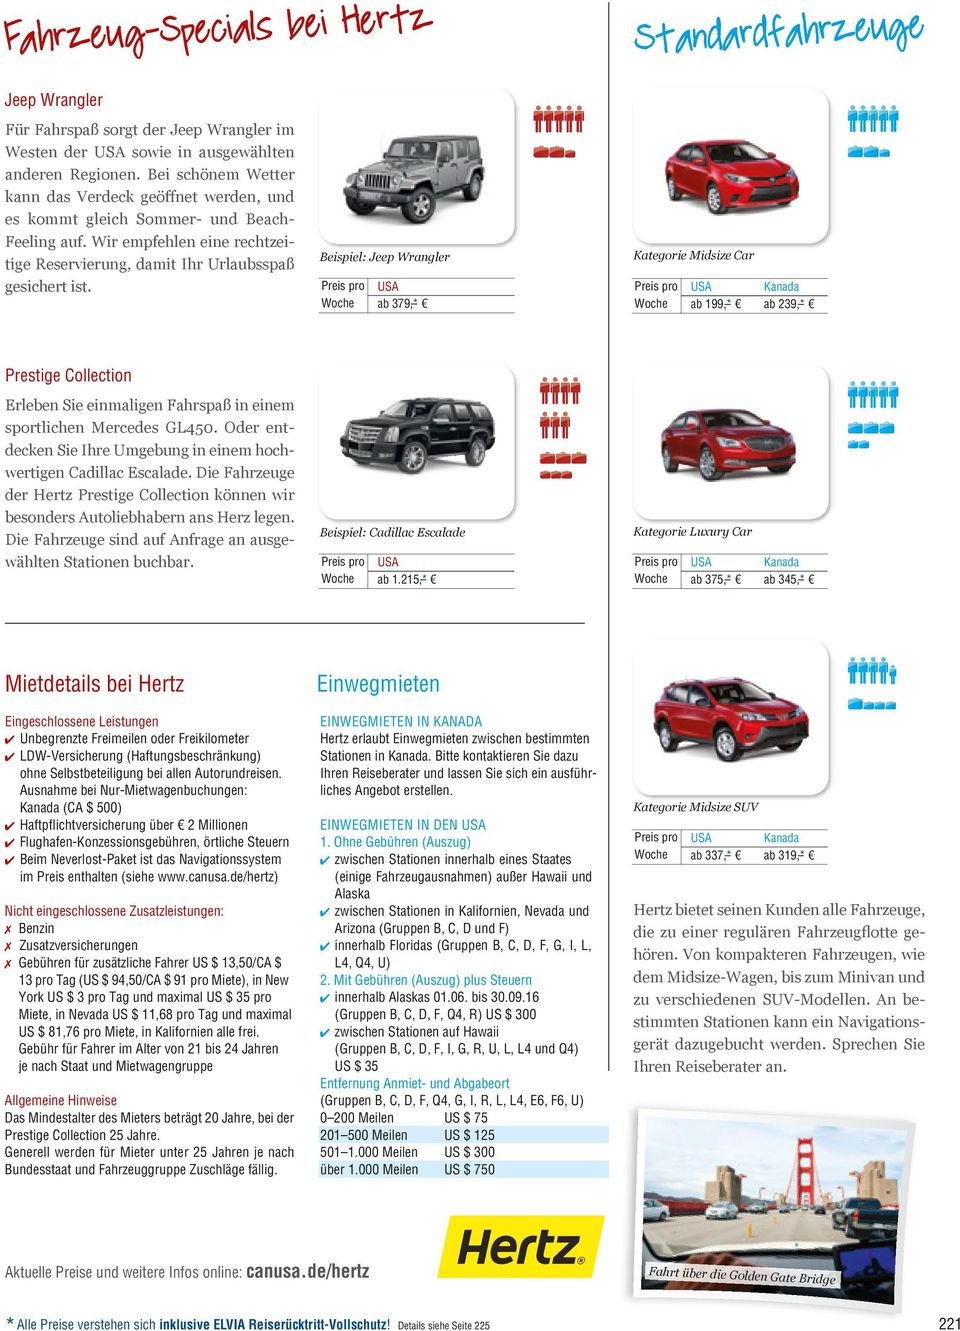 Beispiel: Jeep Wrangler usa ab 379, * Kategorie Midsize Car ab 199, * ab 239, * Prestige Collection Erleben Sie einmaligen Fahrspaß in einem sportlichen Mercedes GL450.